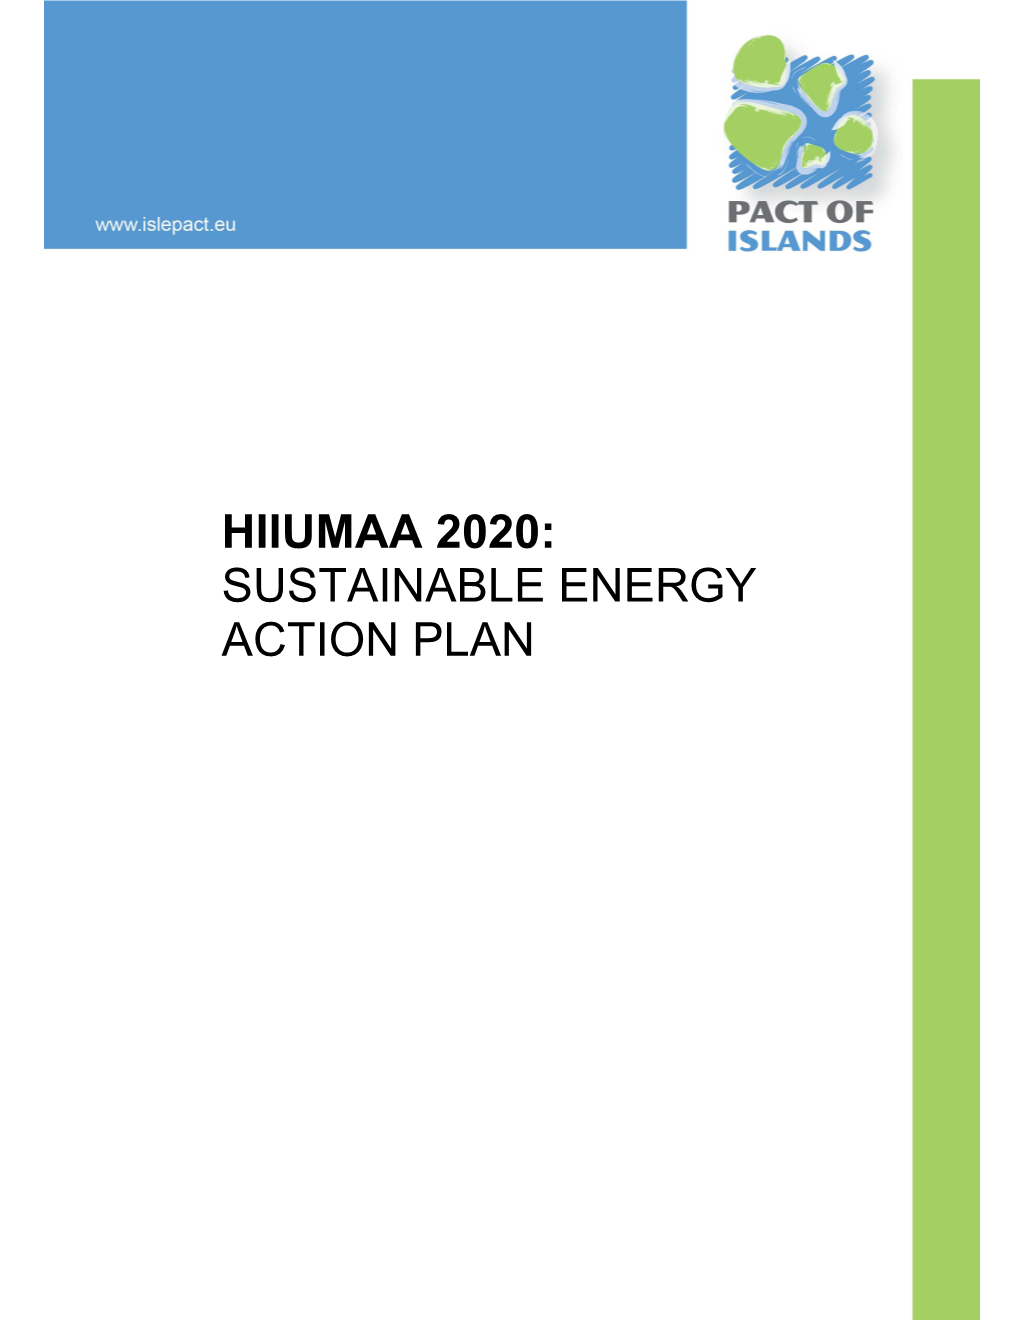 Hiiumaa 2020: Sustainable Energy Action Plan